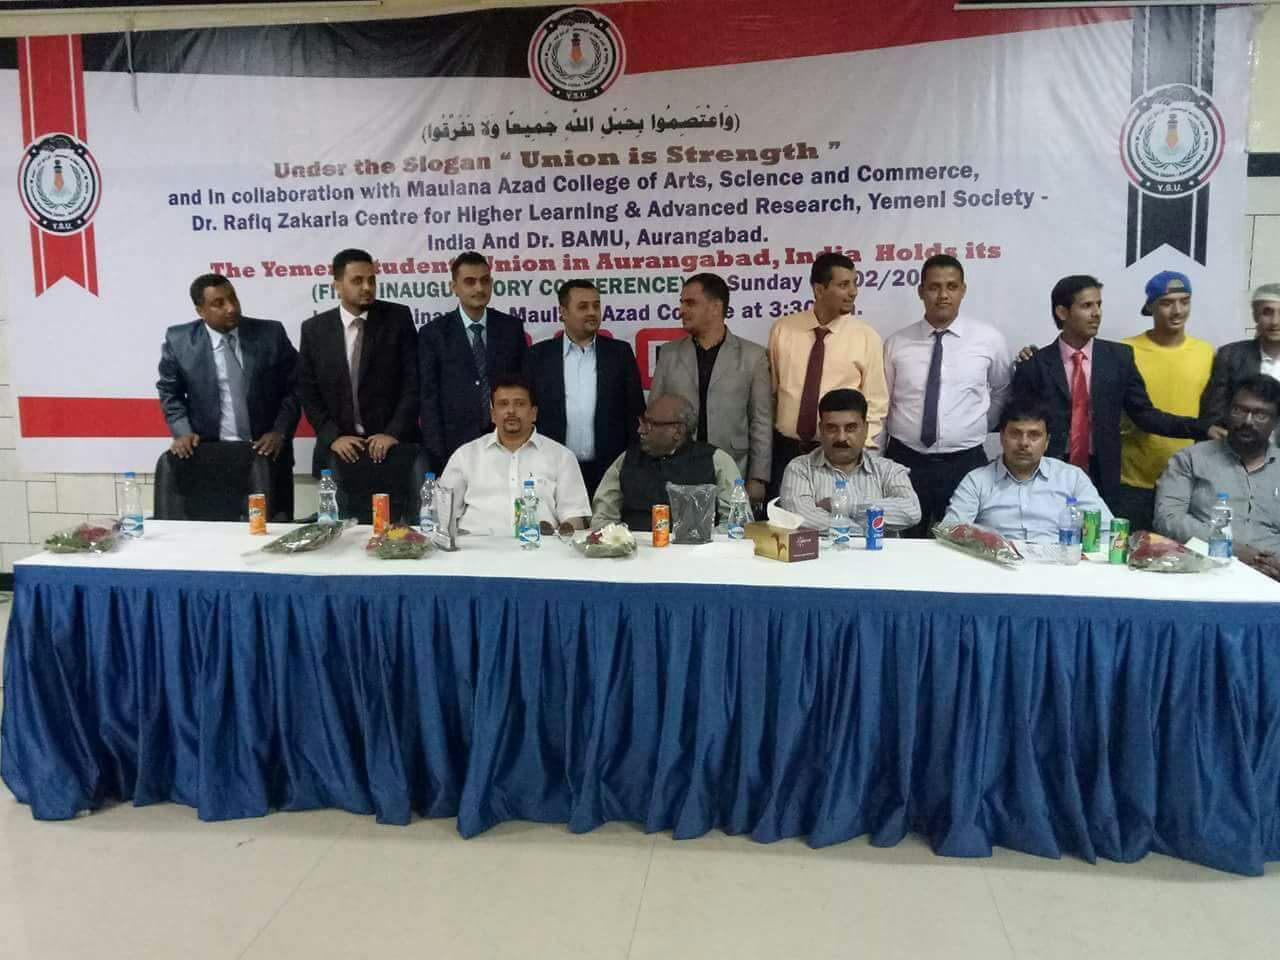 الهند : إتحاد طلاب اليمنيين بأورانج أباد يدشن مؤتمره العام الأول وينتخب \